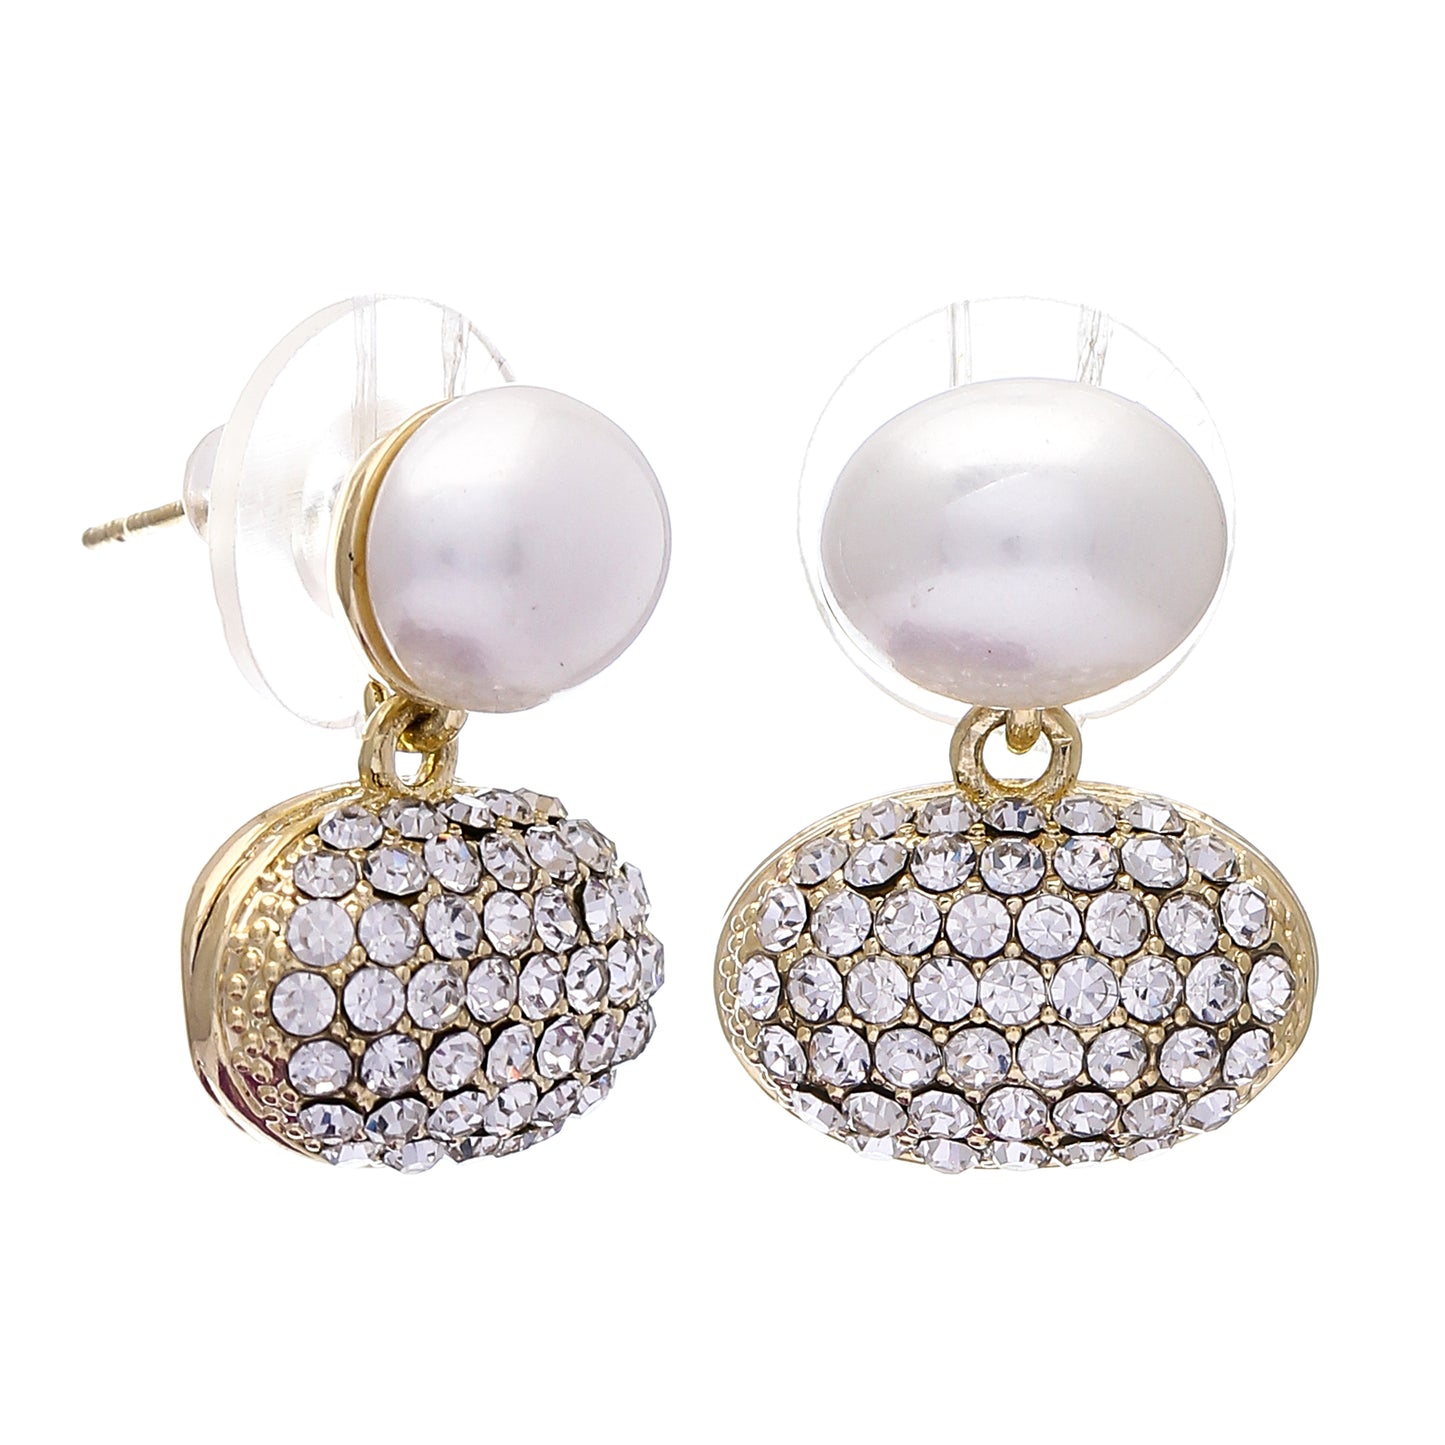 Big Pearl Earrings- Fancy Fashion Jewellery Earrings, Korean Jhumka for Women and Girls